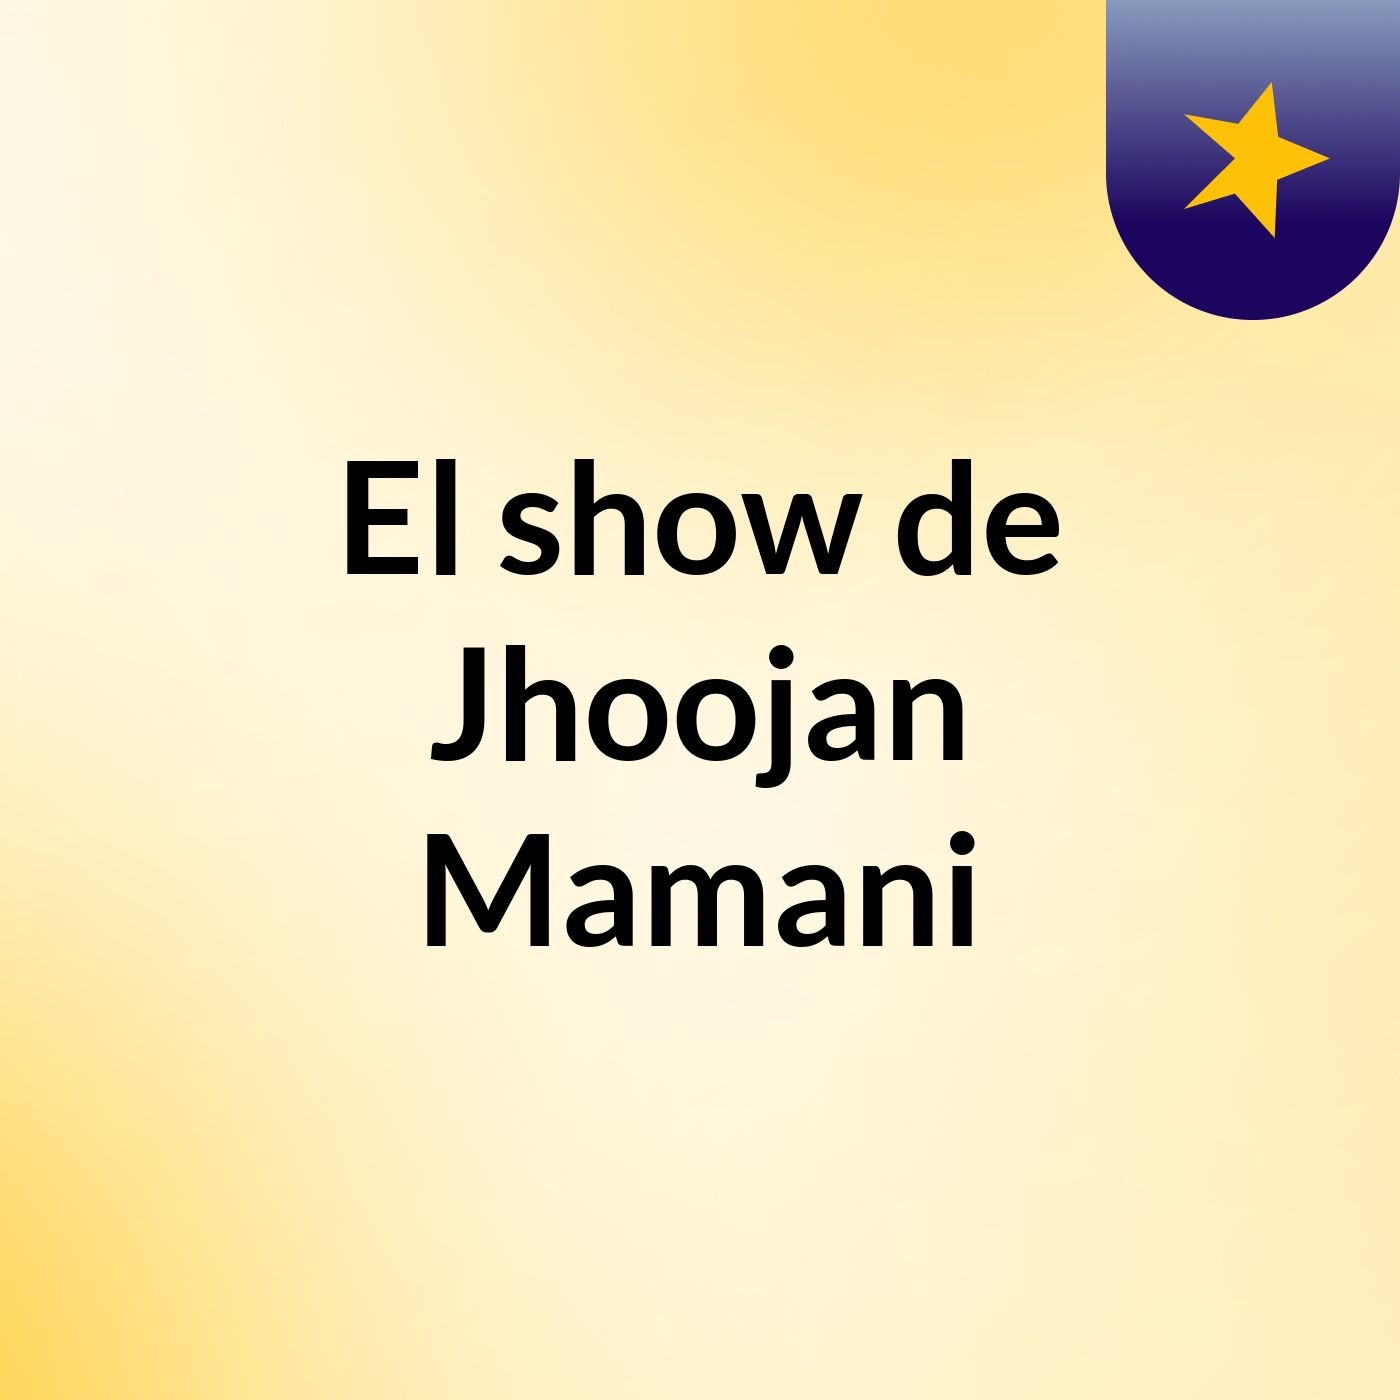 El show de Jhoojan Mamani